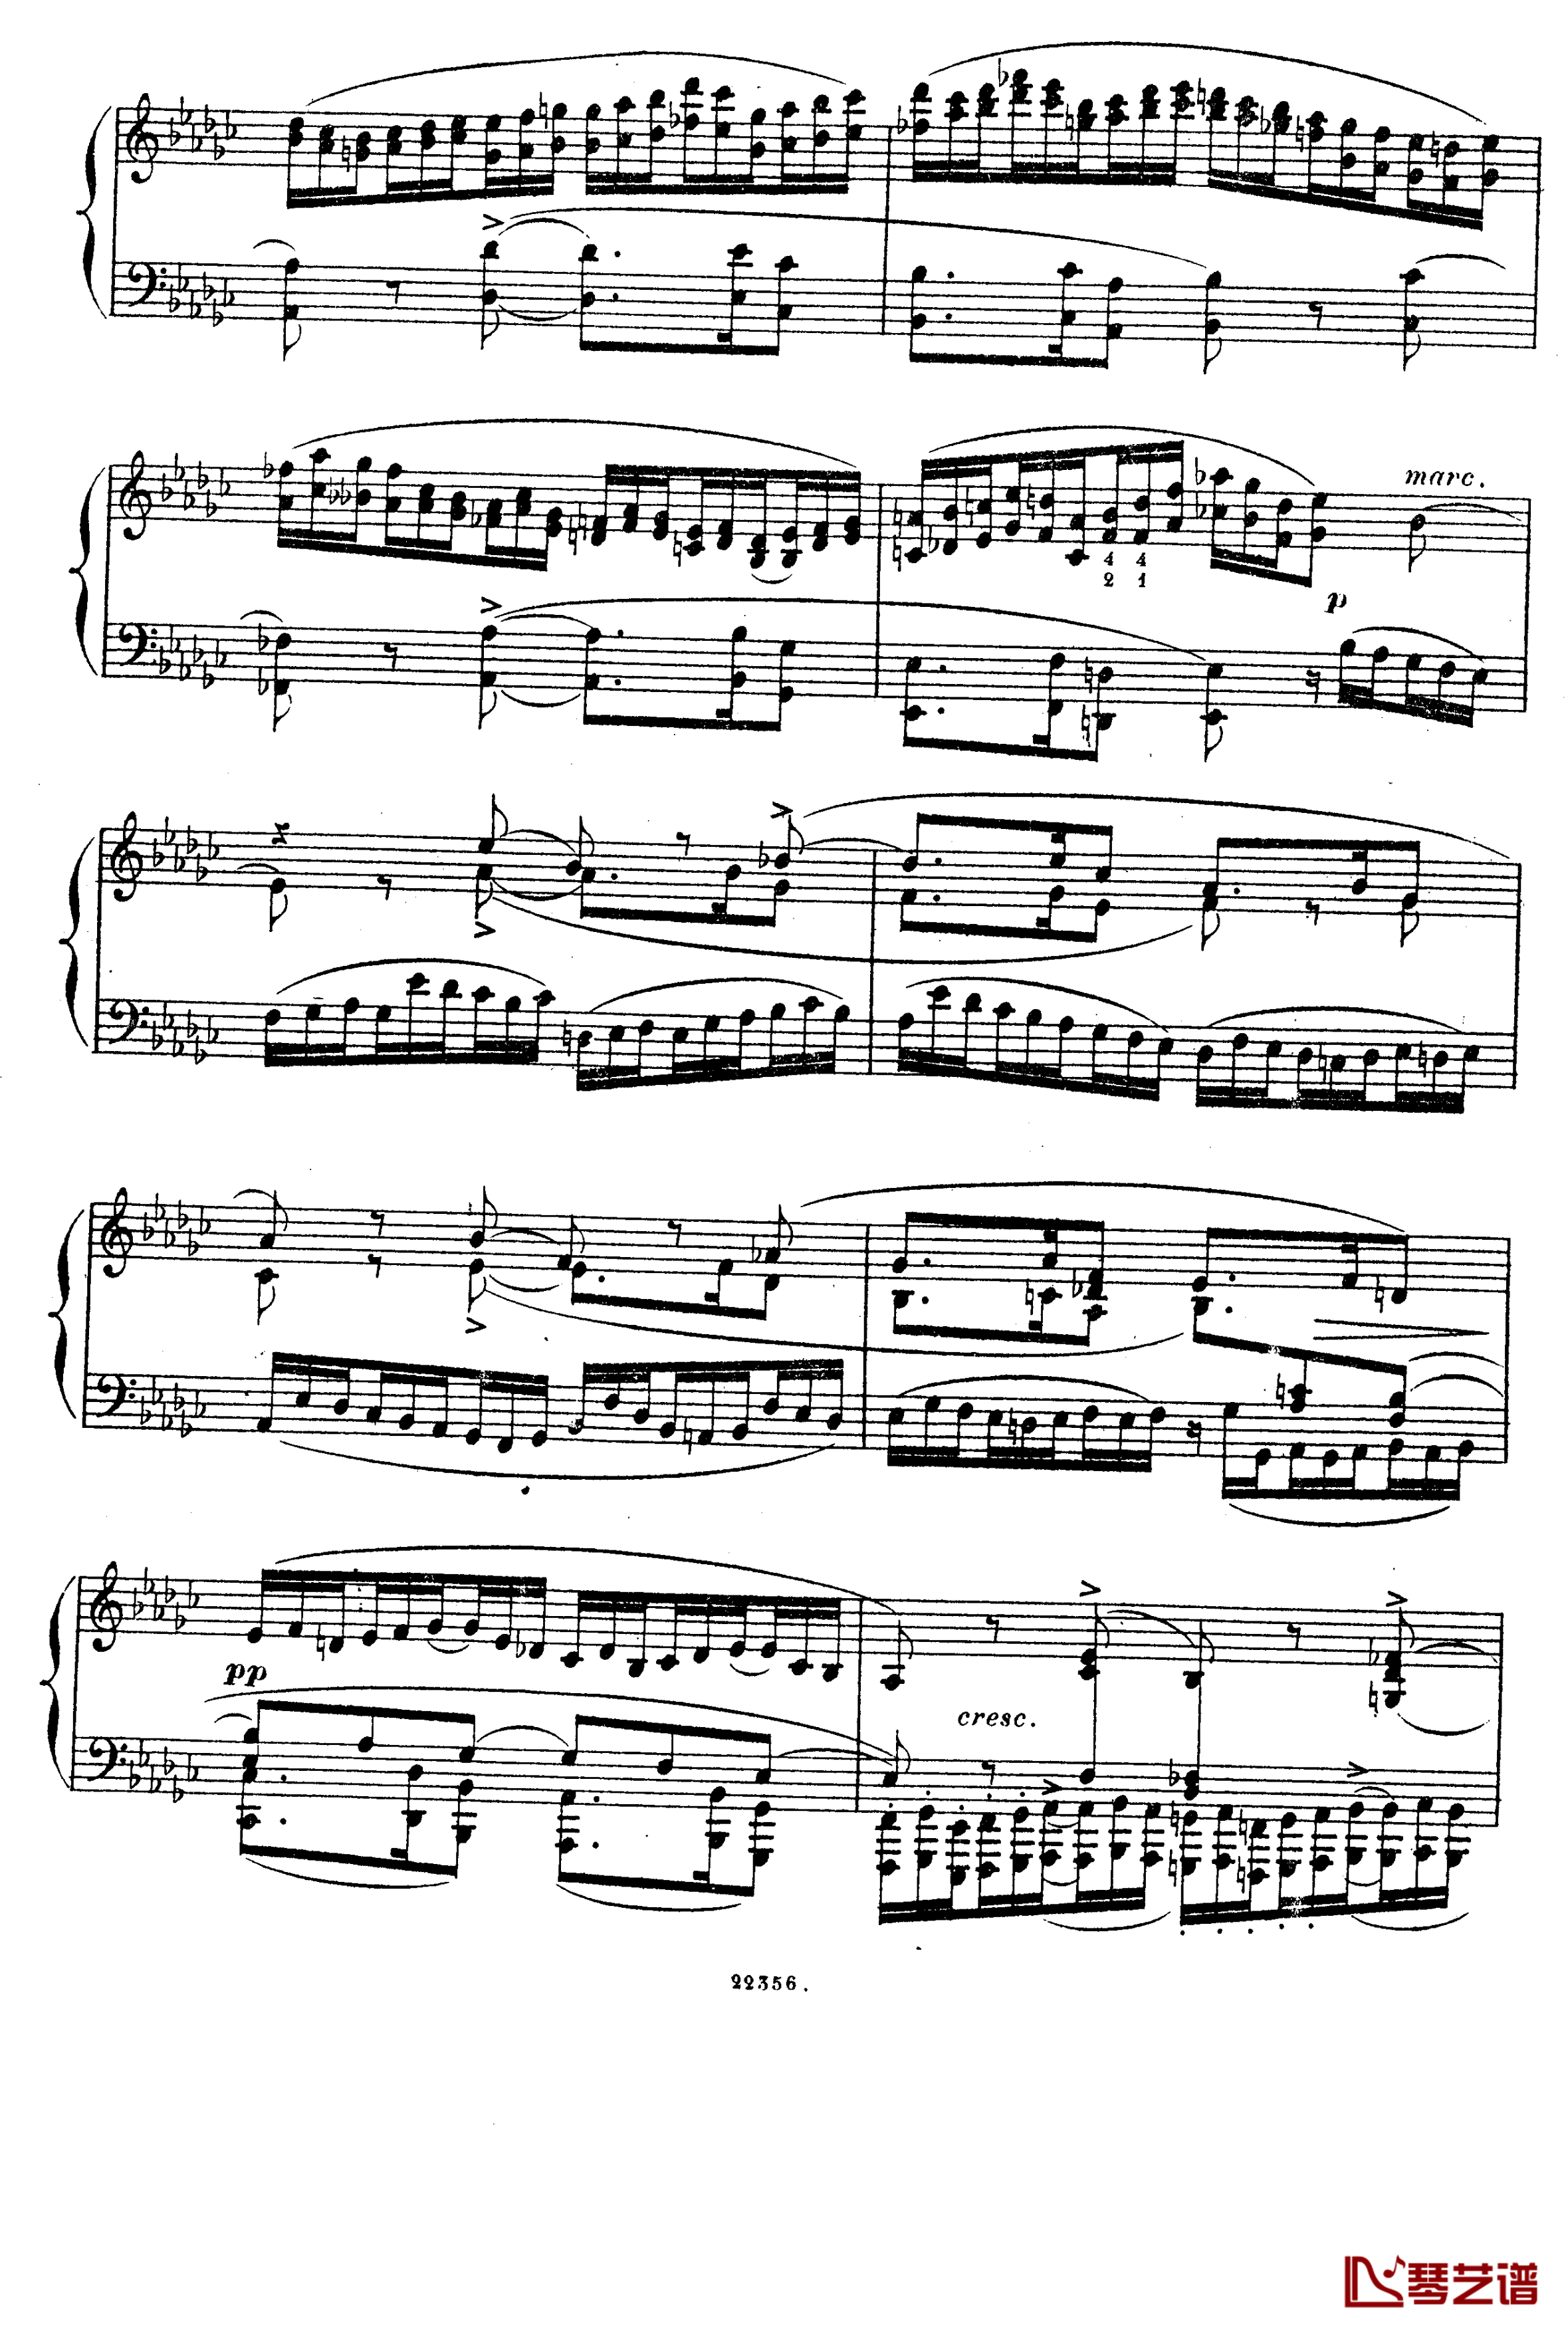  前奏曲与赋格 Op.6钢琴谱-斯甘巴蒂11